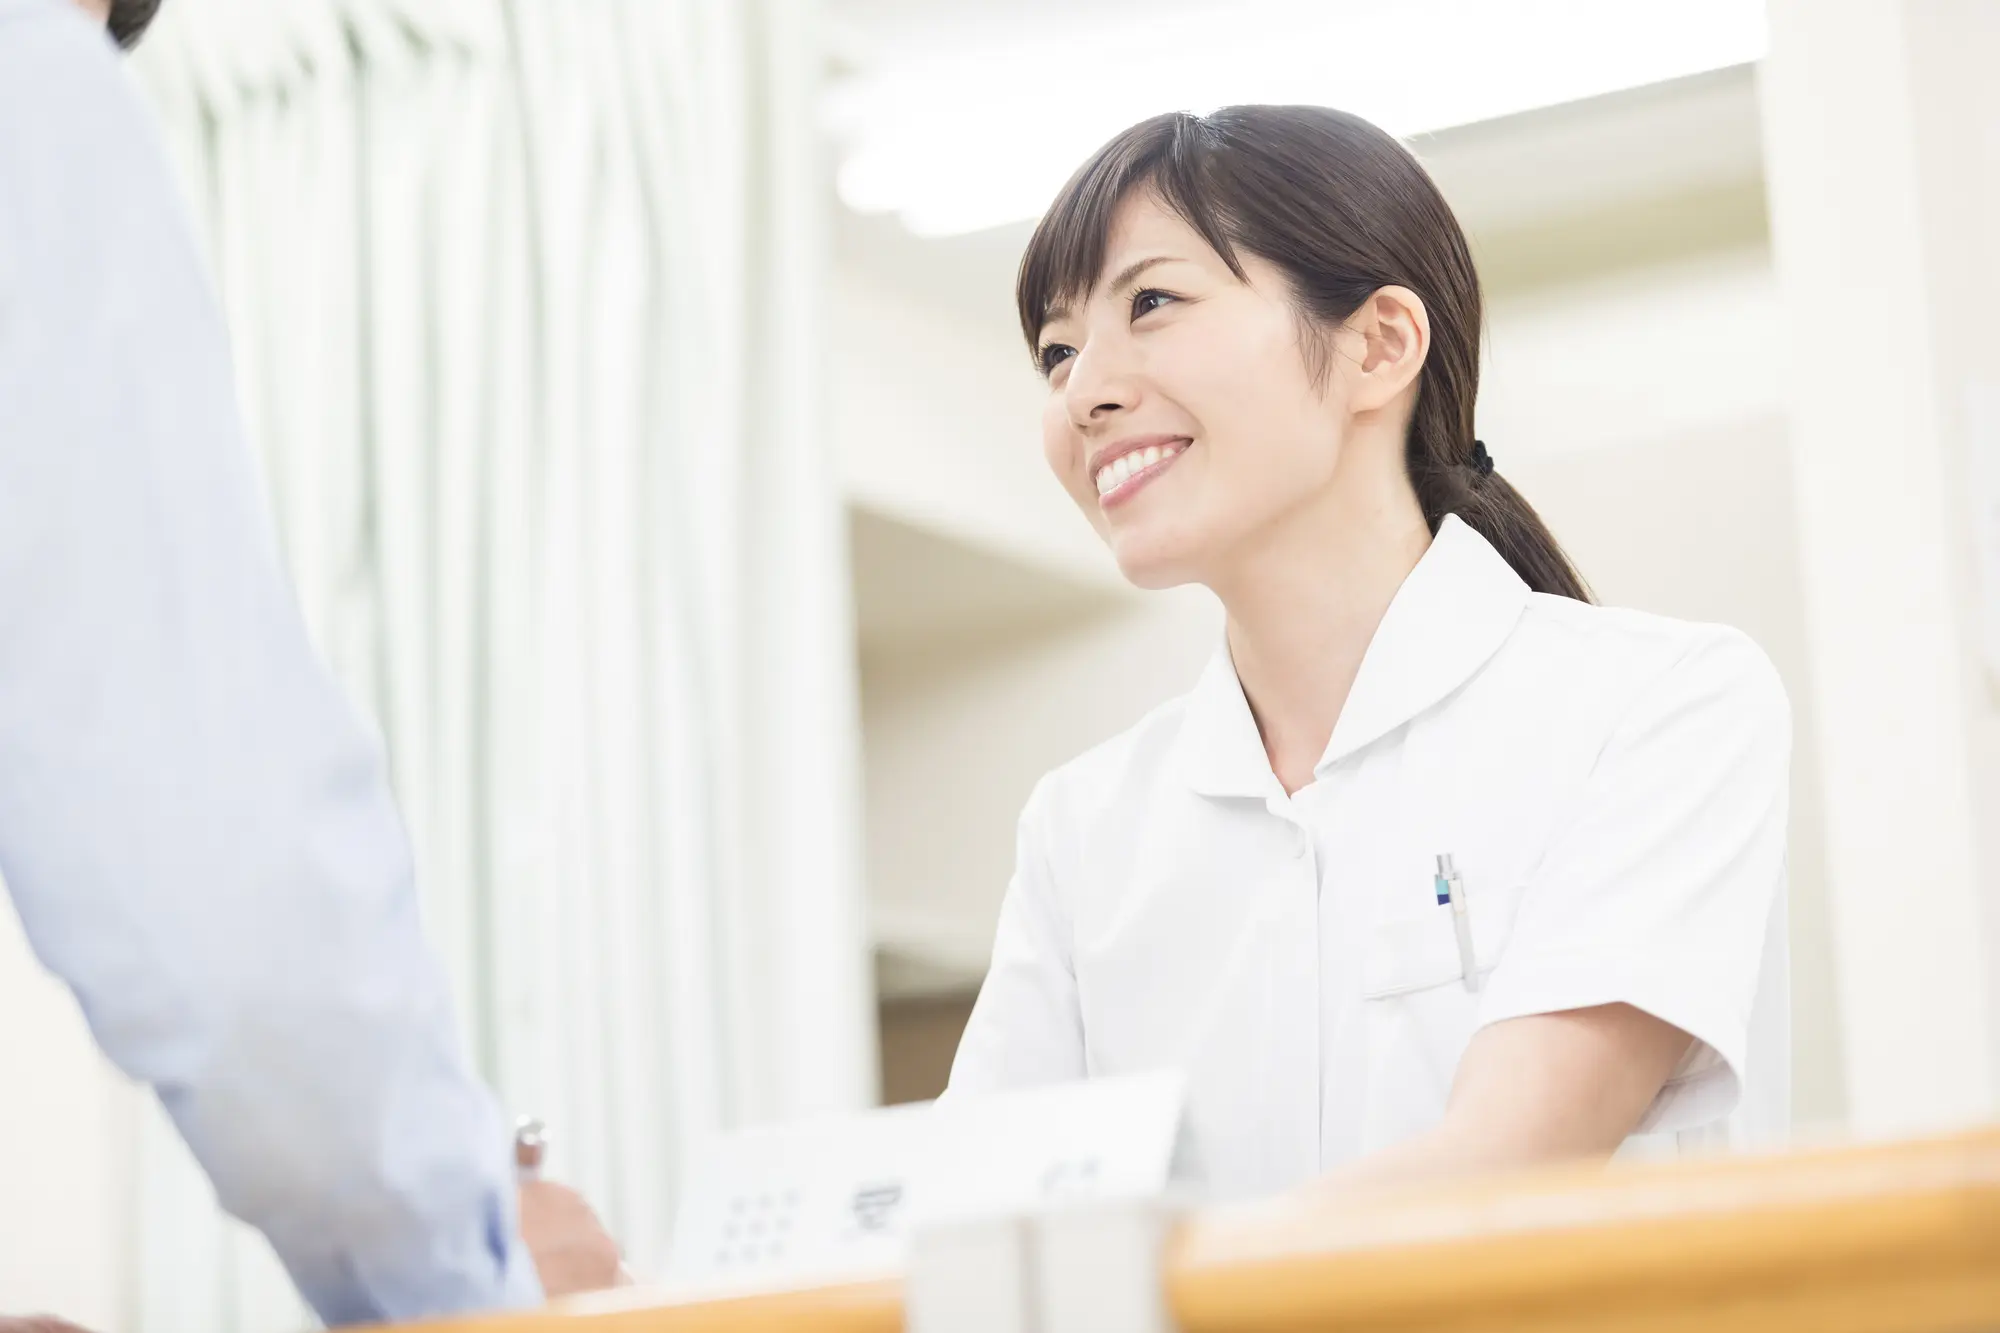 札幌立花病院は札幌市手稲区にある長期療養型施設です。慢性期や高齢、老人の患者さんにも安心して過ごせる最適の環境を提供しています。心療内科・精神科、内科、アレルギー科、リハビリテーション、放射線科など様々な疾患に対応します。